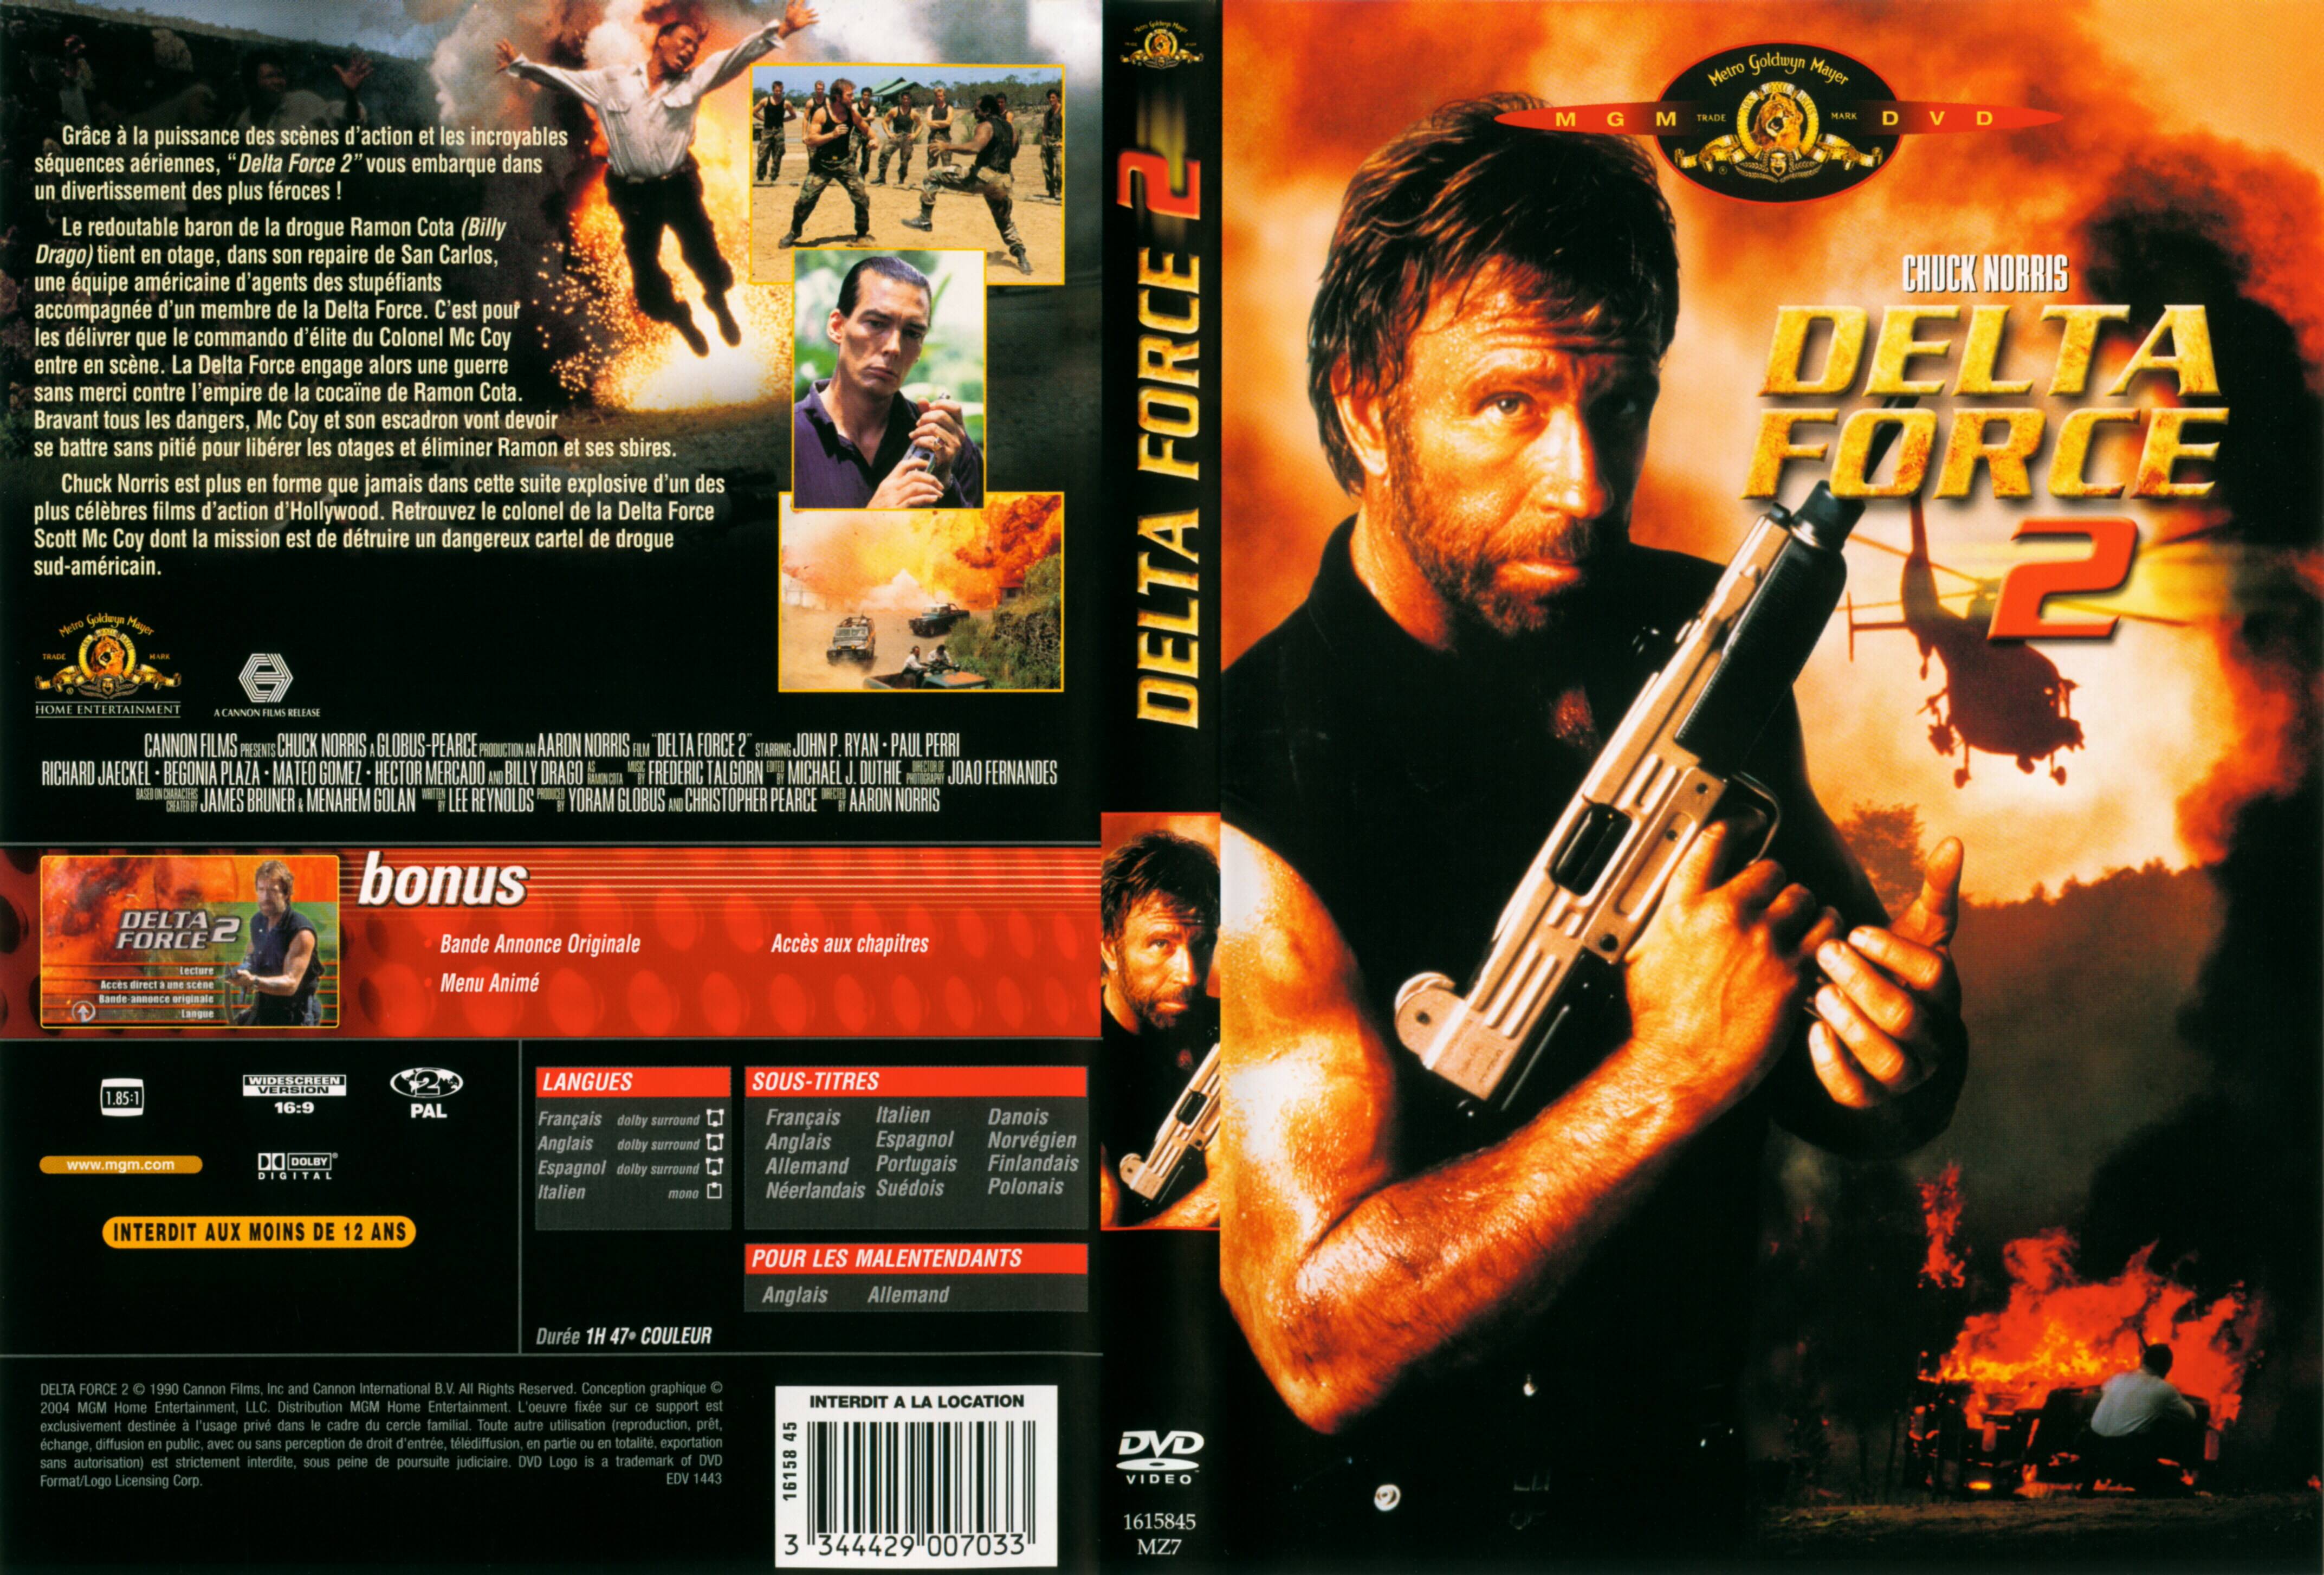 Jaquette DVD Delta force 2